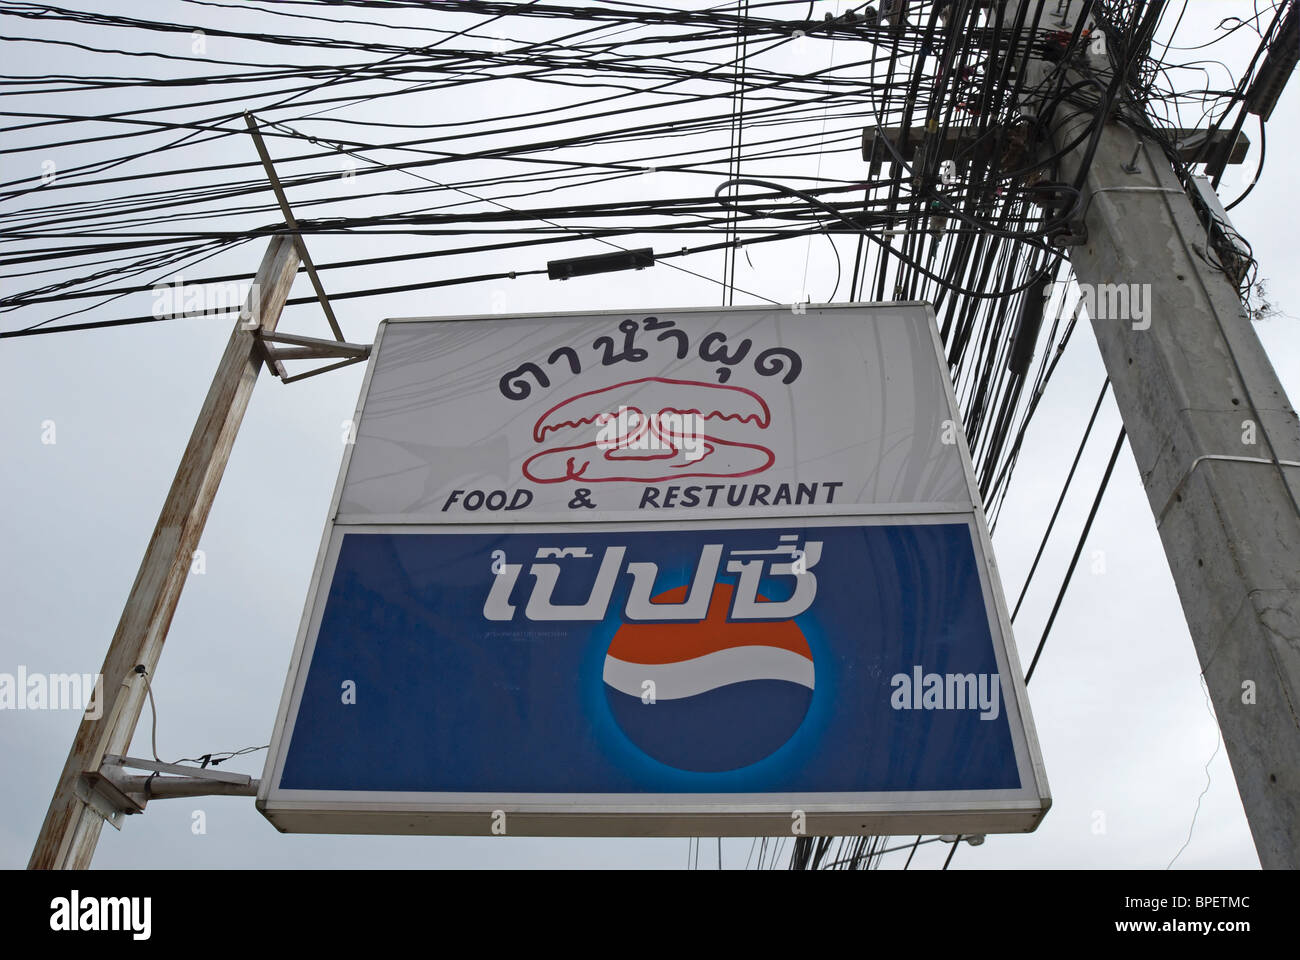 La langue thaï signe pour un restaurant appelé la trombe, à phetchabun, Thaïlande, Asie du sud-est, au-dessus d'une publicité pepsi Banque D'Images